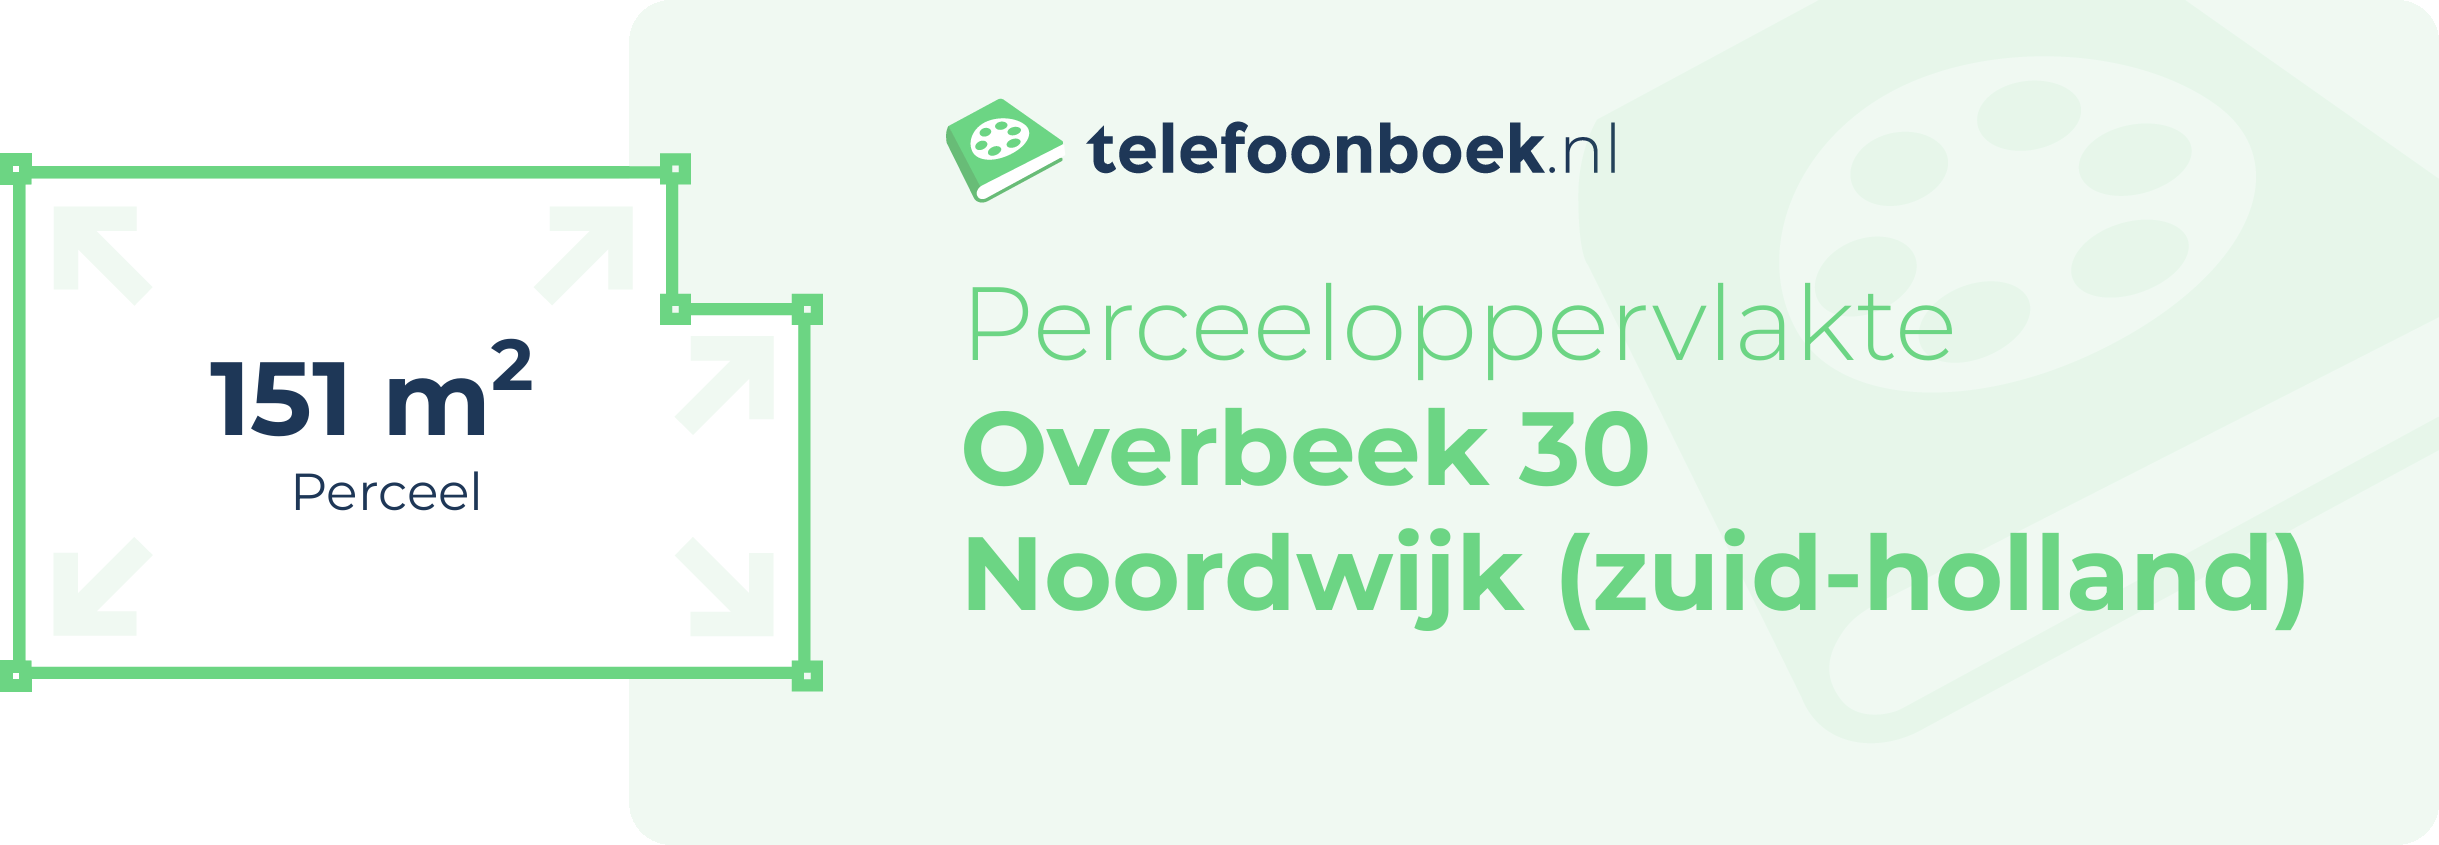 Perceeloppervlakte Overbeek 30 Noordwijk (Zuid-Holland)